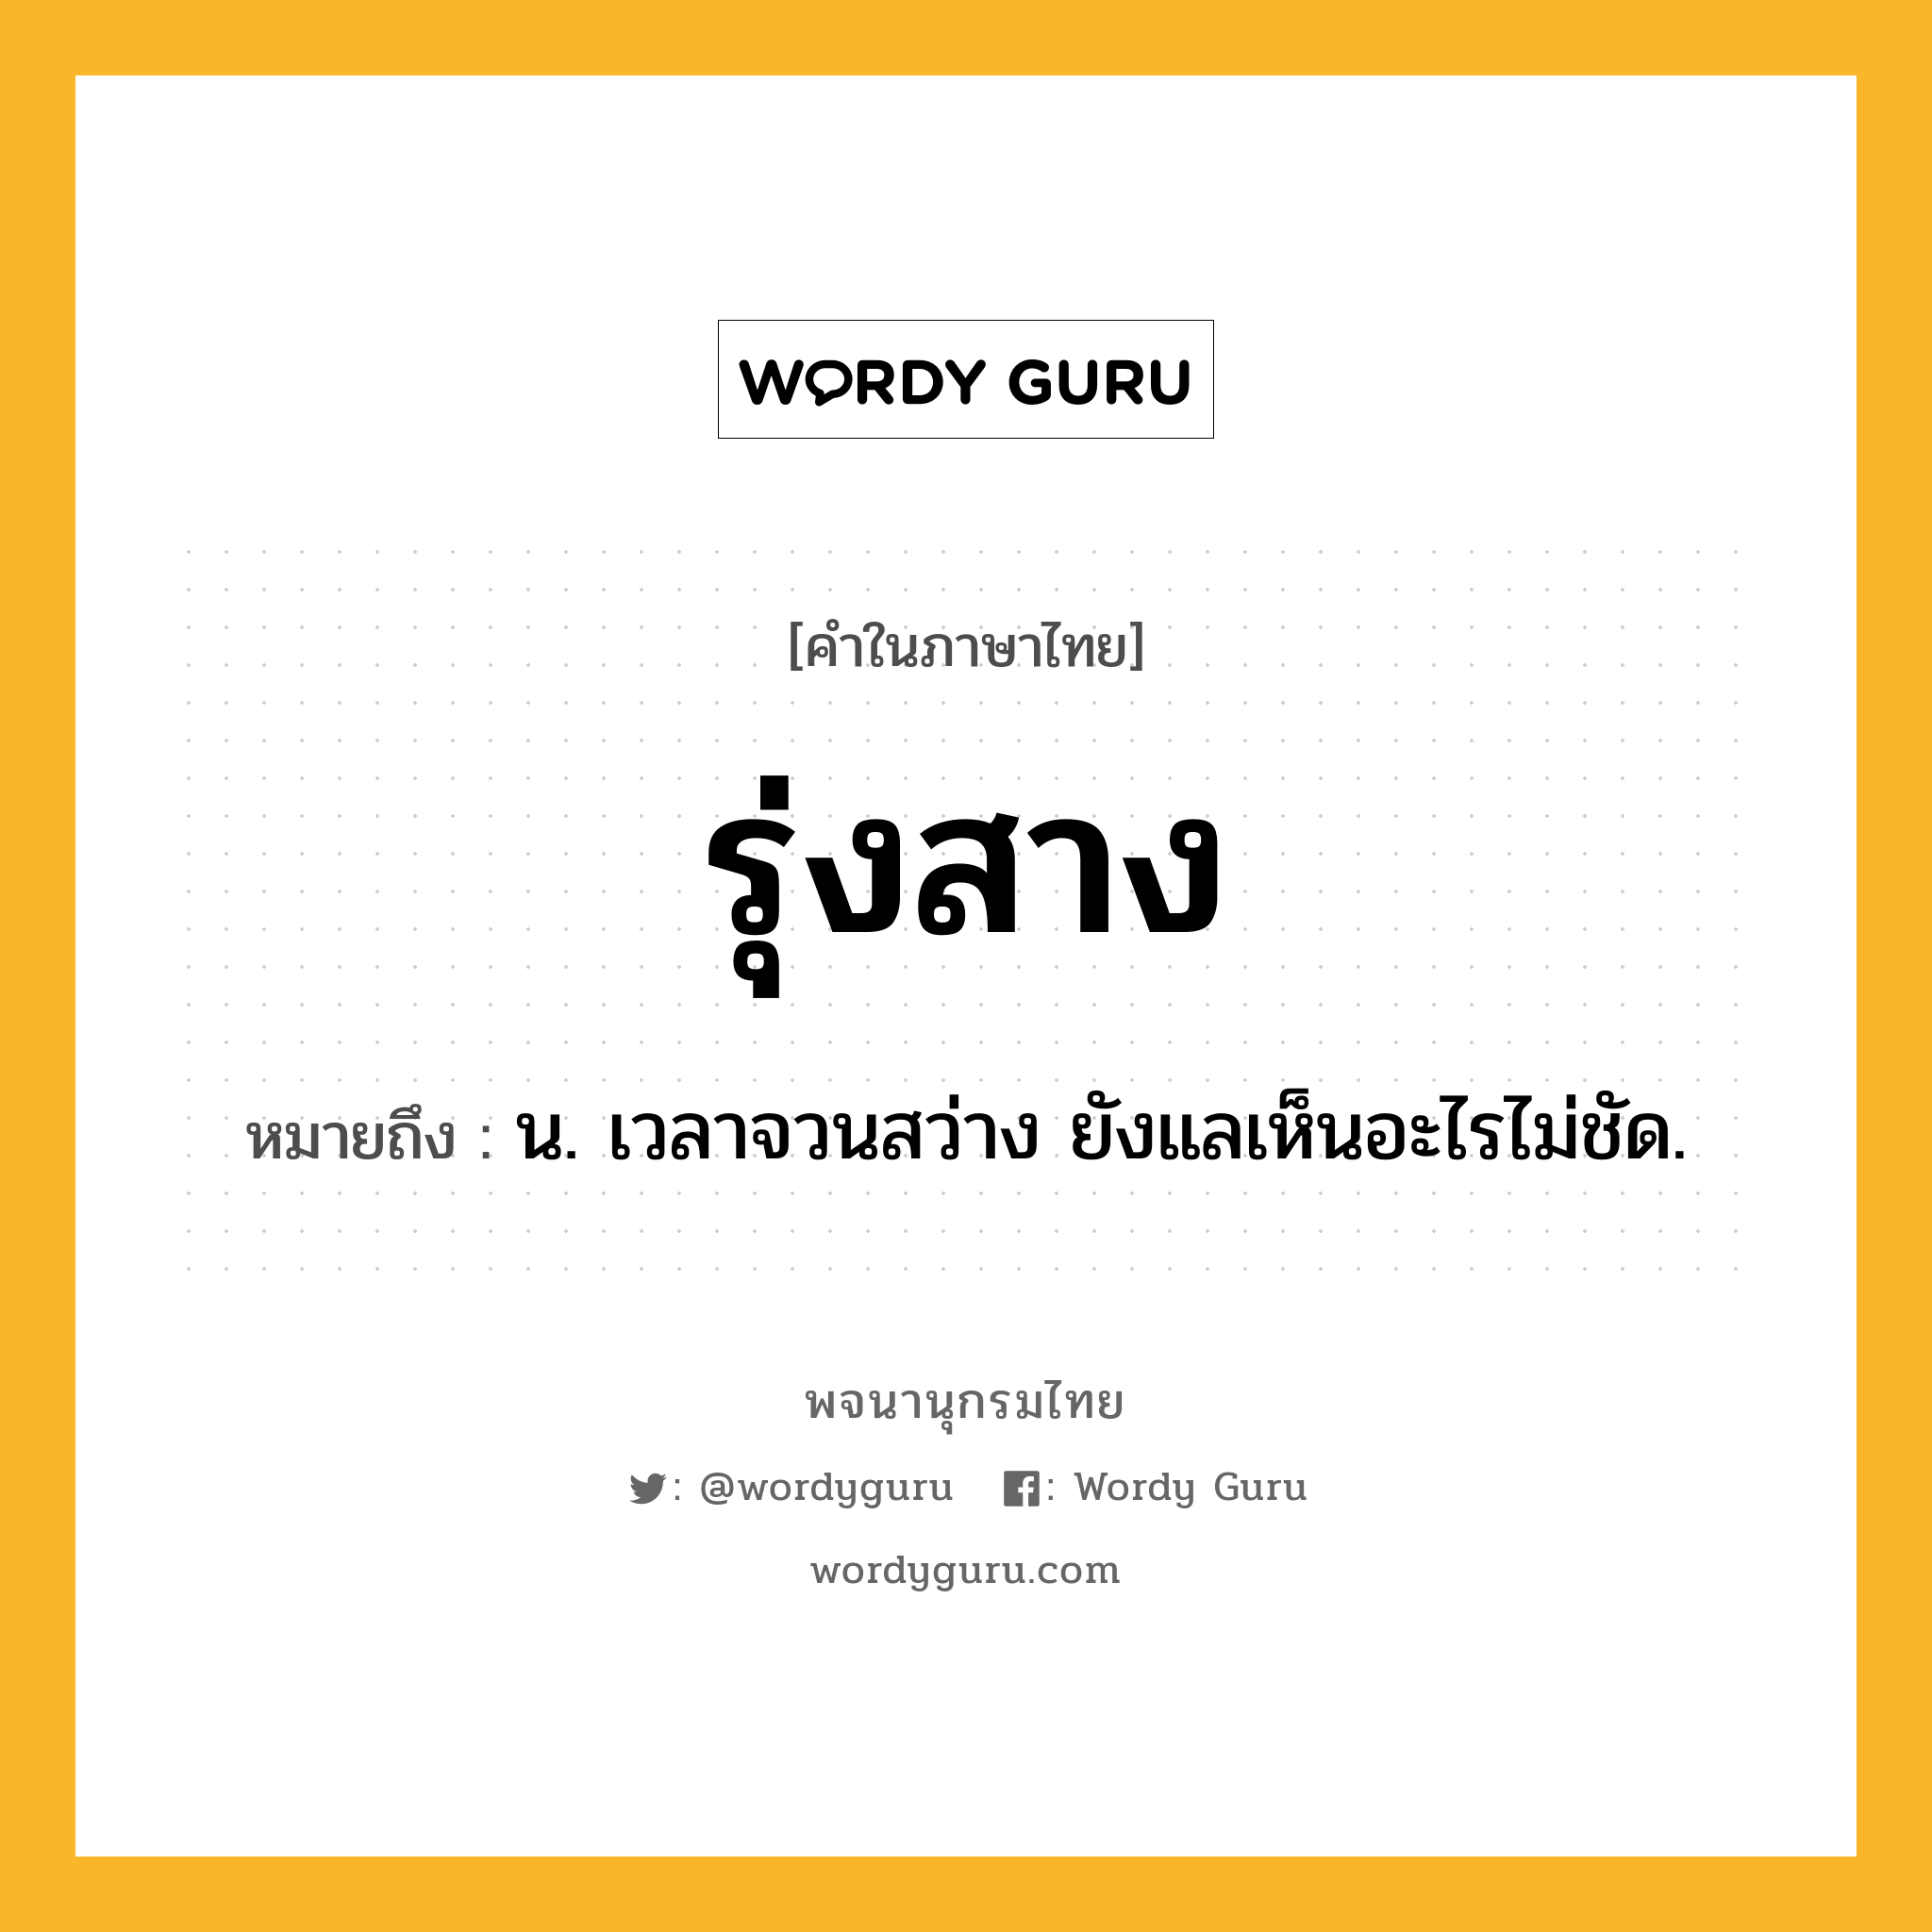 รุ่งสาง ความหมาย หมายถึงอะไร?, คำในภาษาไทย รุ่งสาง หมายถึง น. เวลาจวนสว่าง ยังแลเห็นอะไรไม่ชัด.